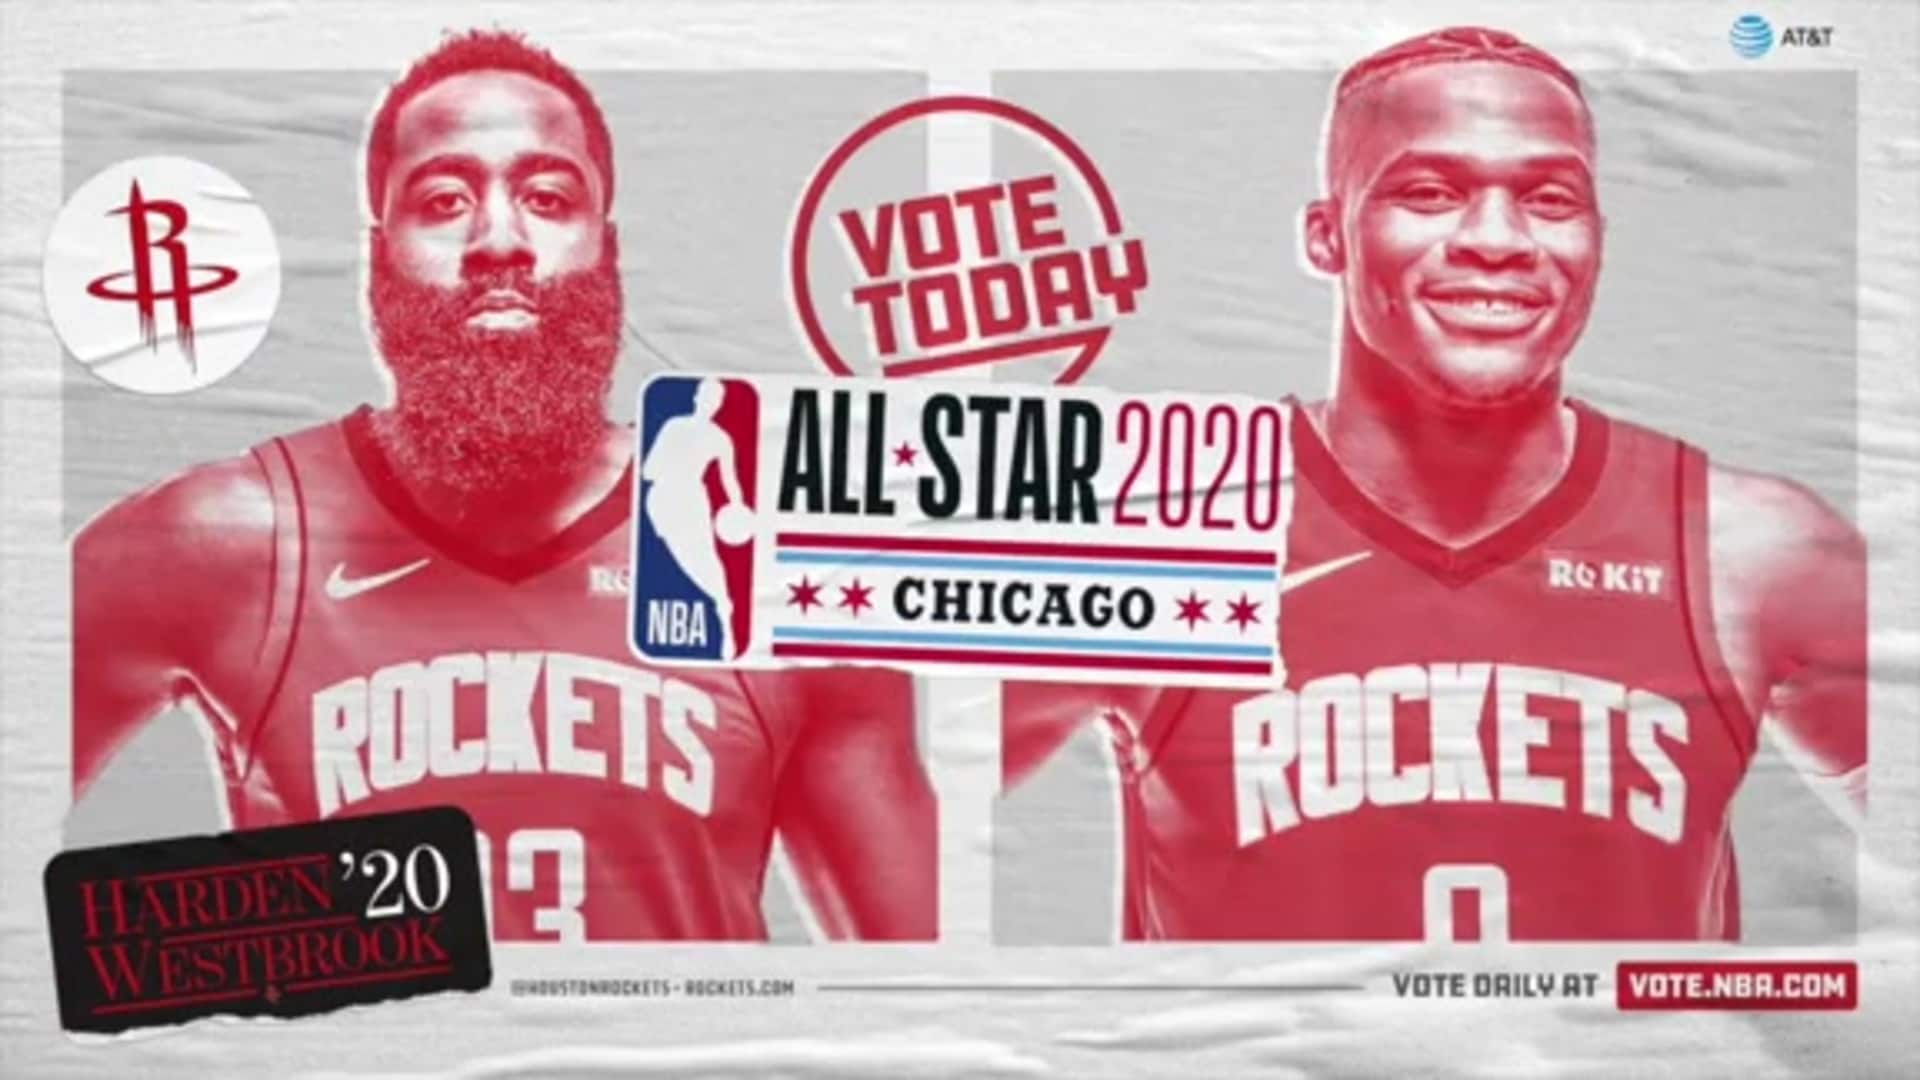 NBA All Star 2020 Wallpaper Free NBA All Star 2020